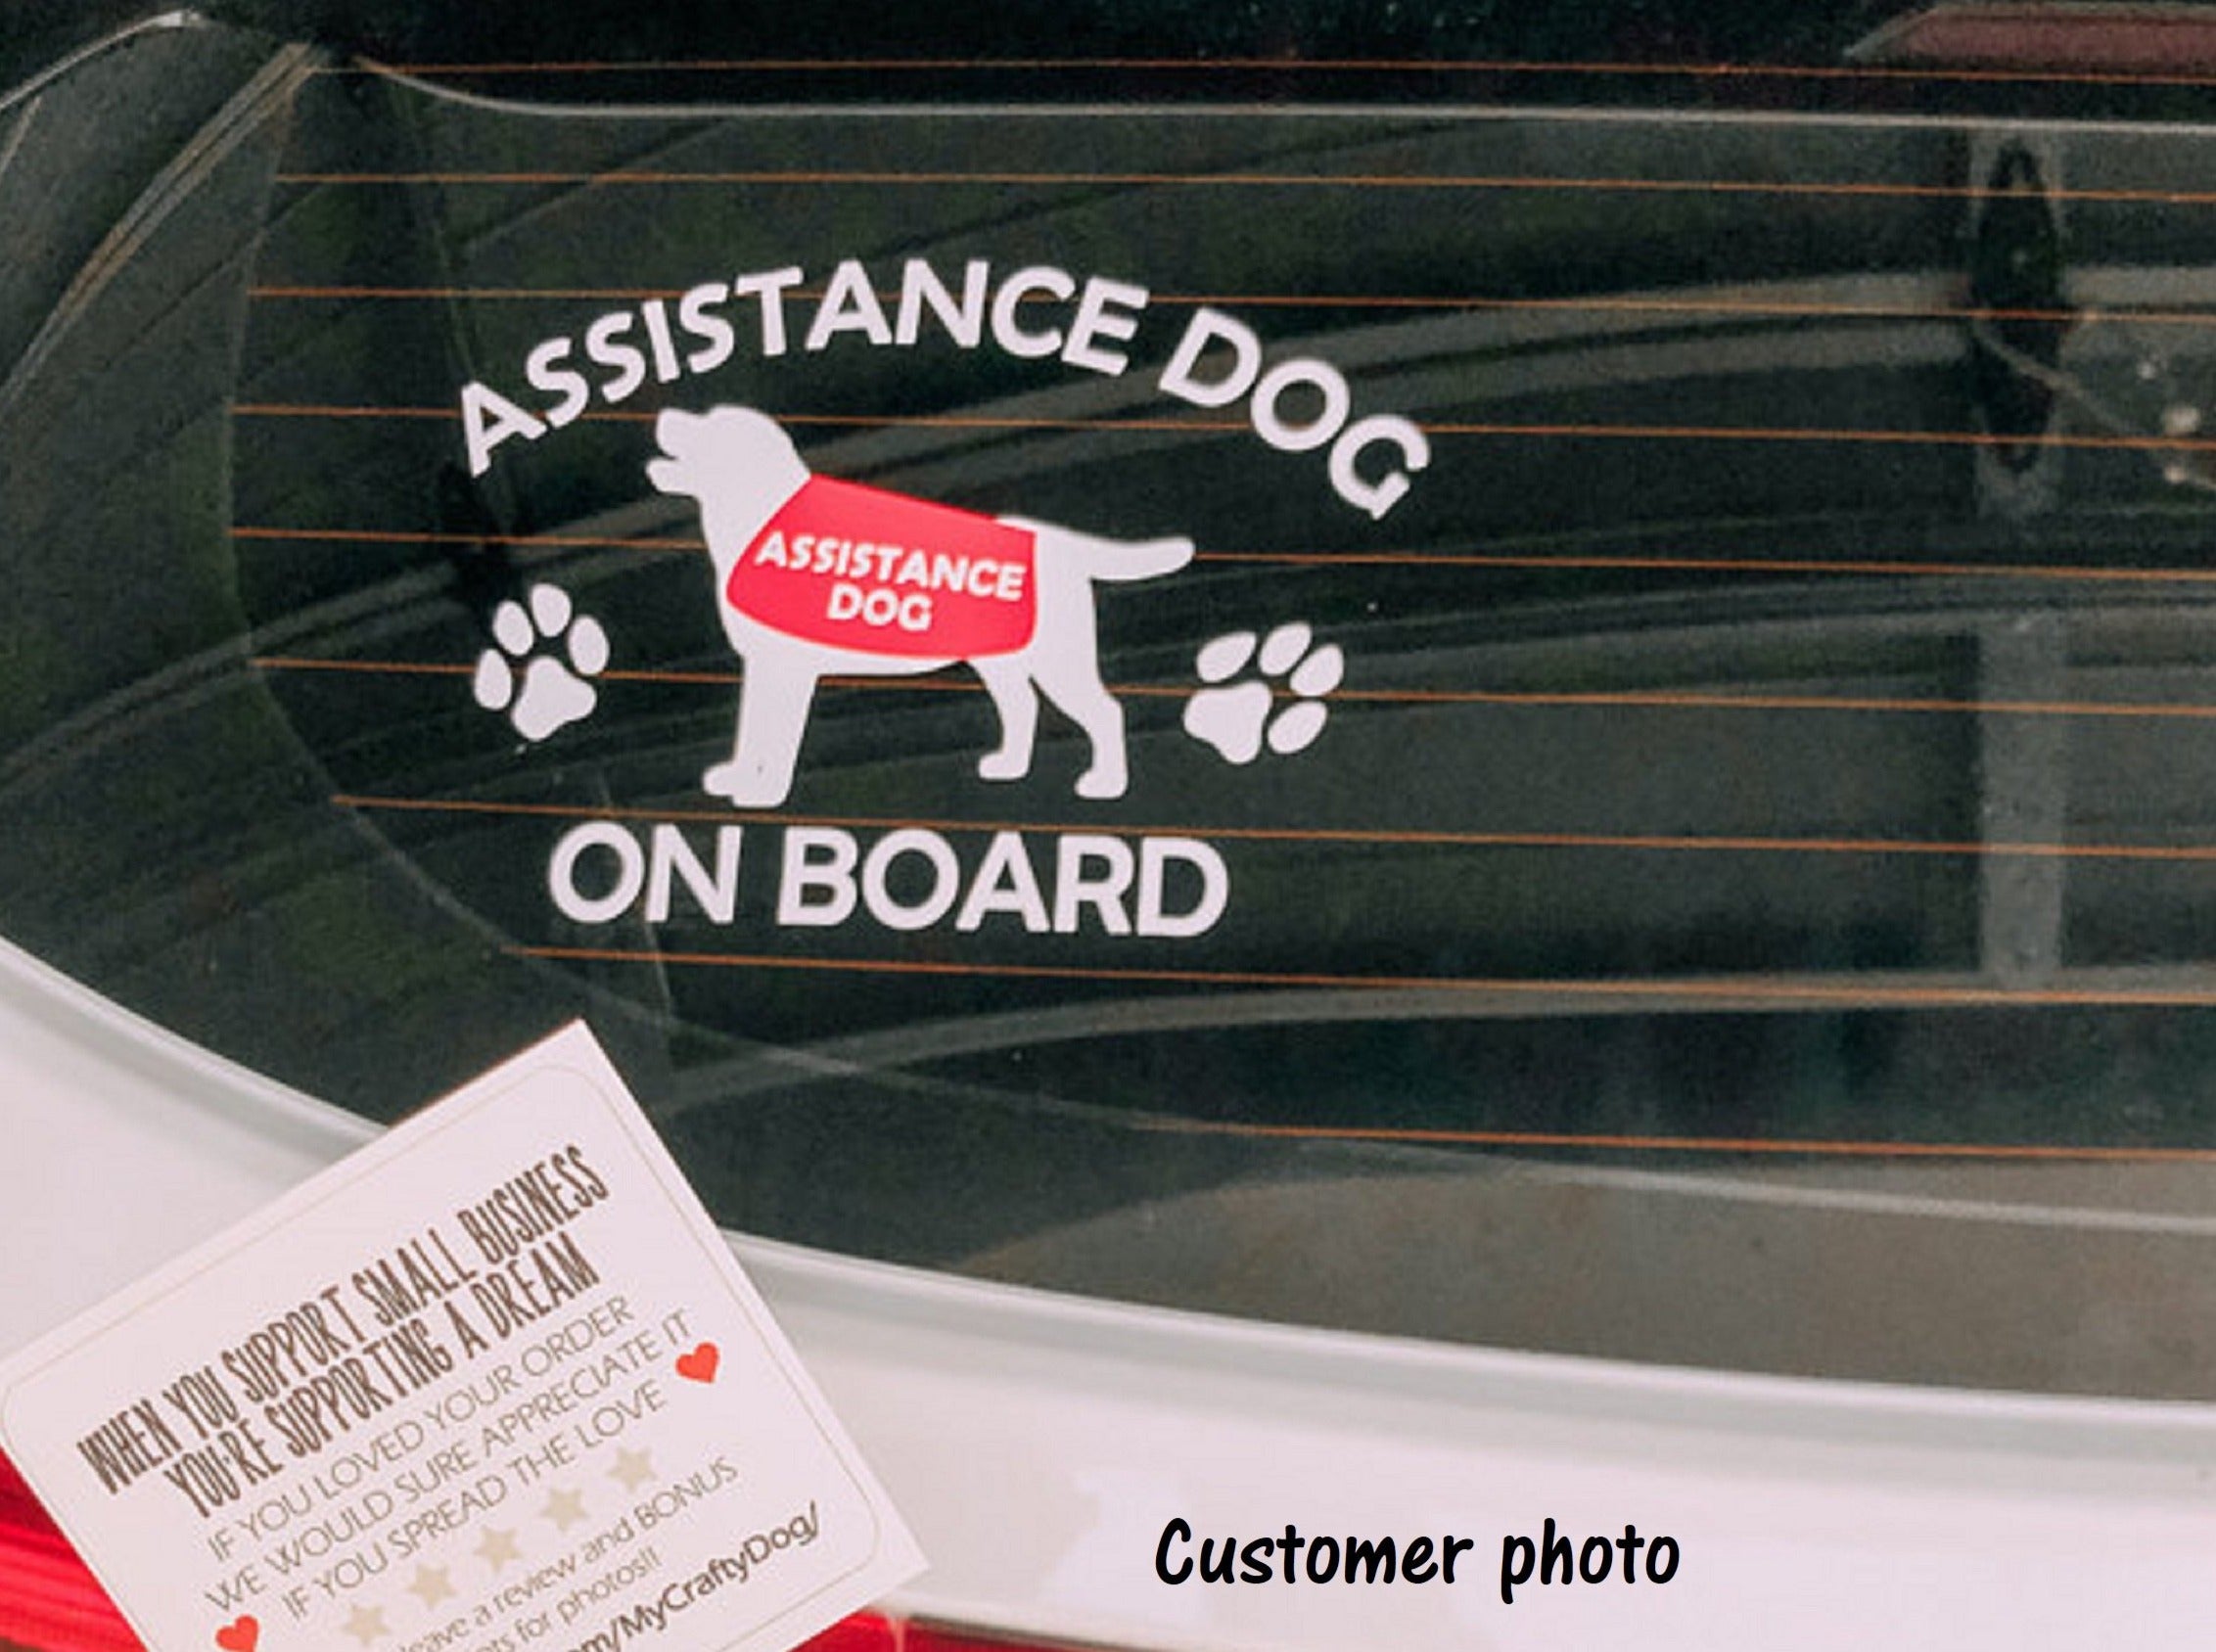 Assistance Dog on Board Car Sticker - My Crafty Dog